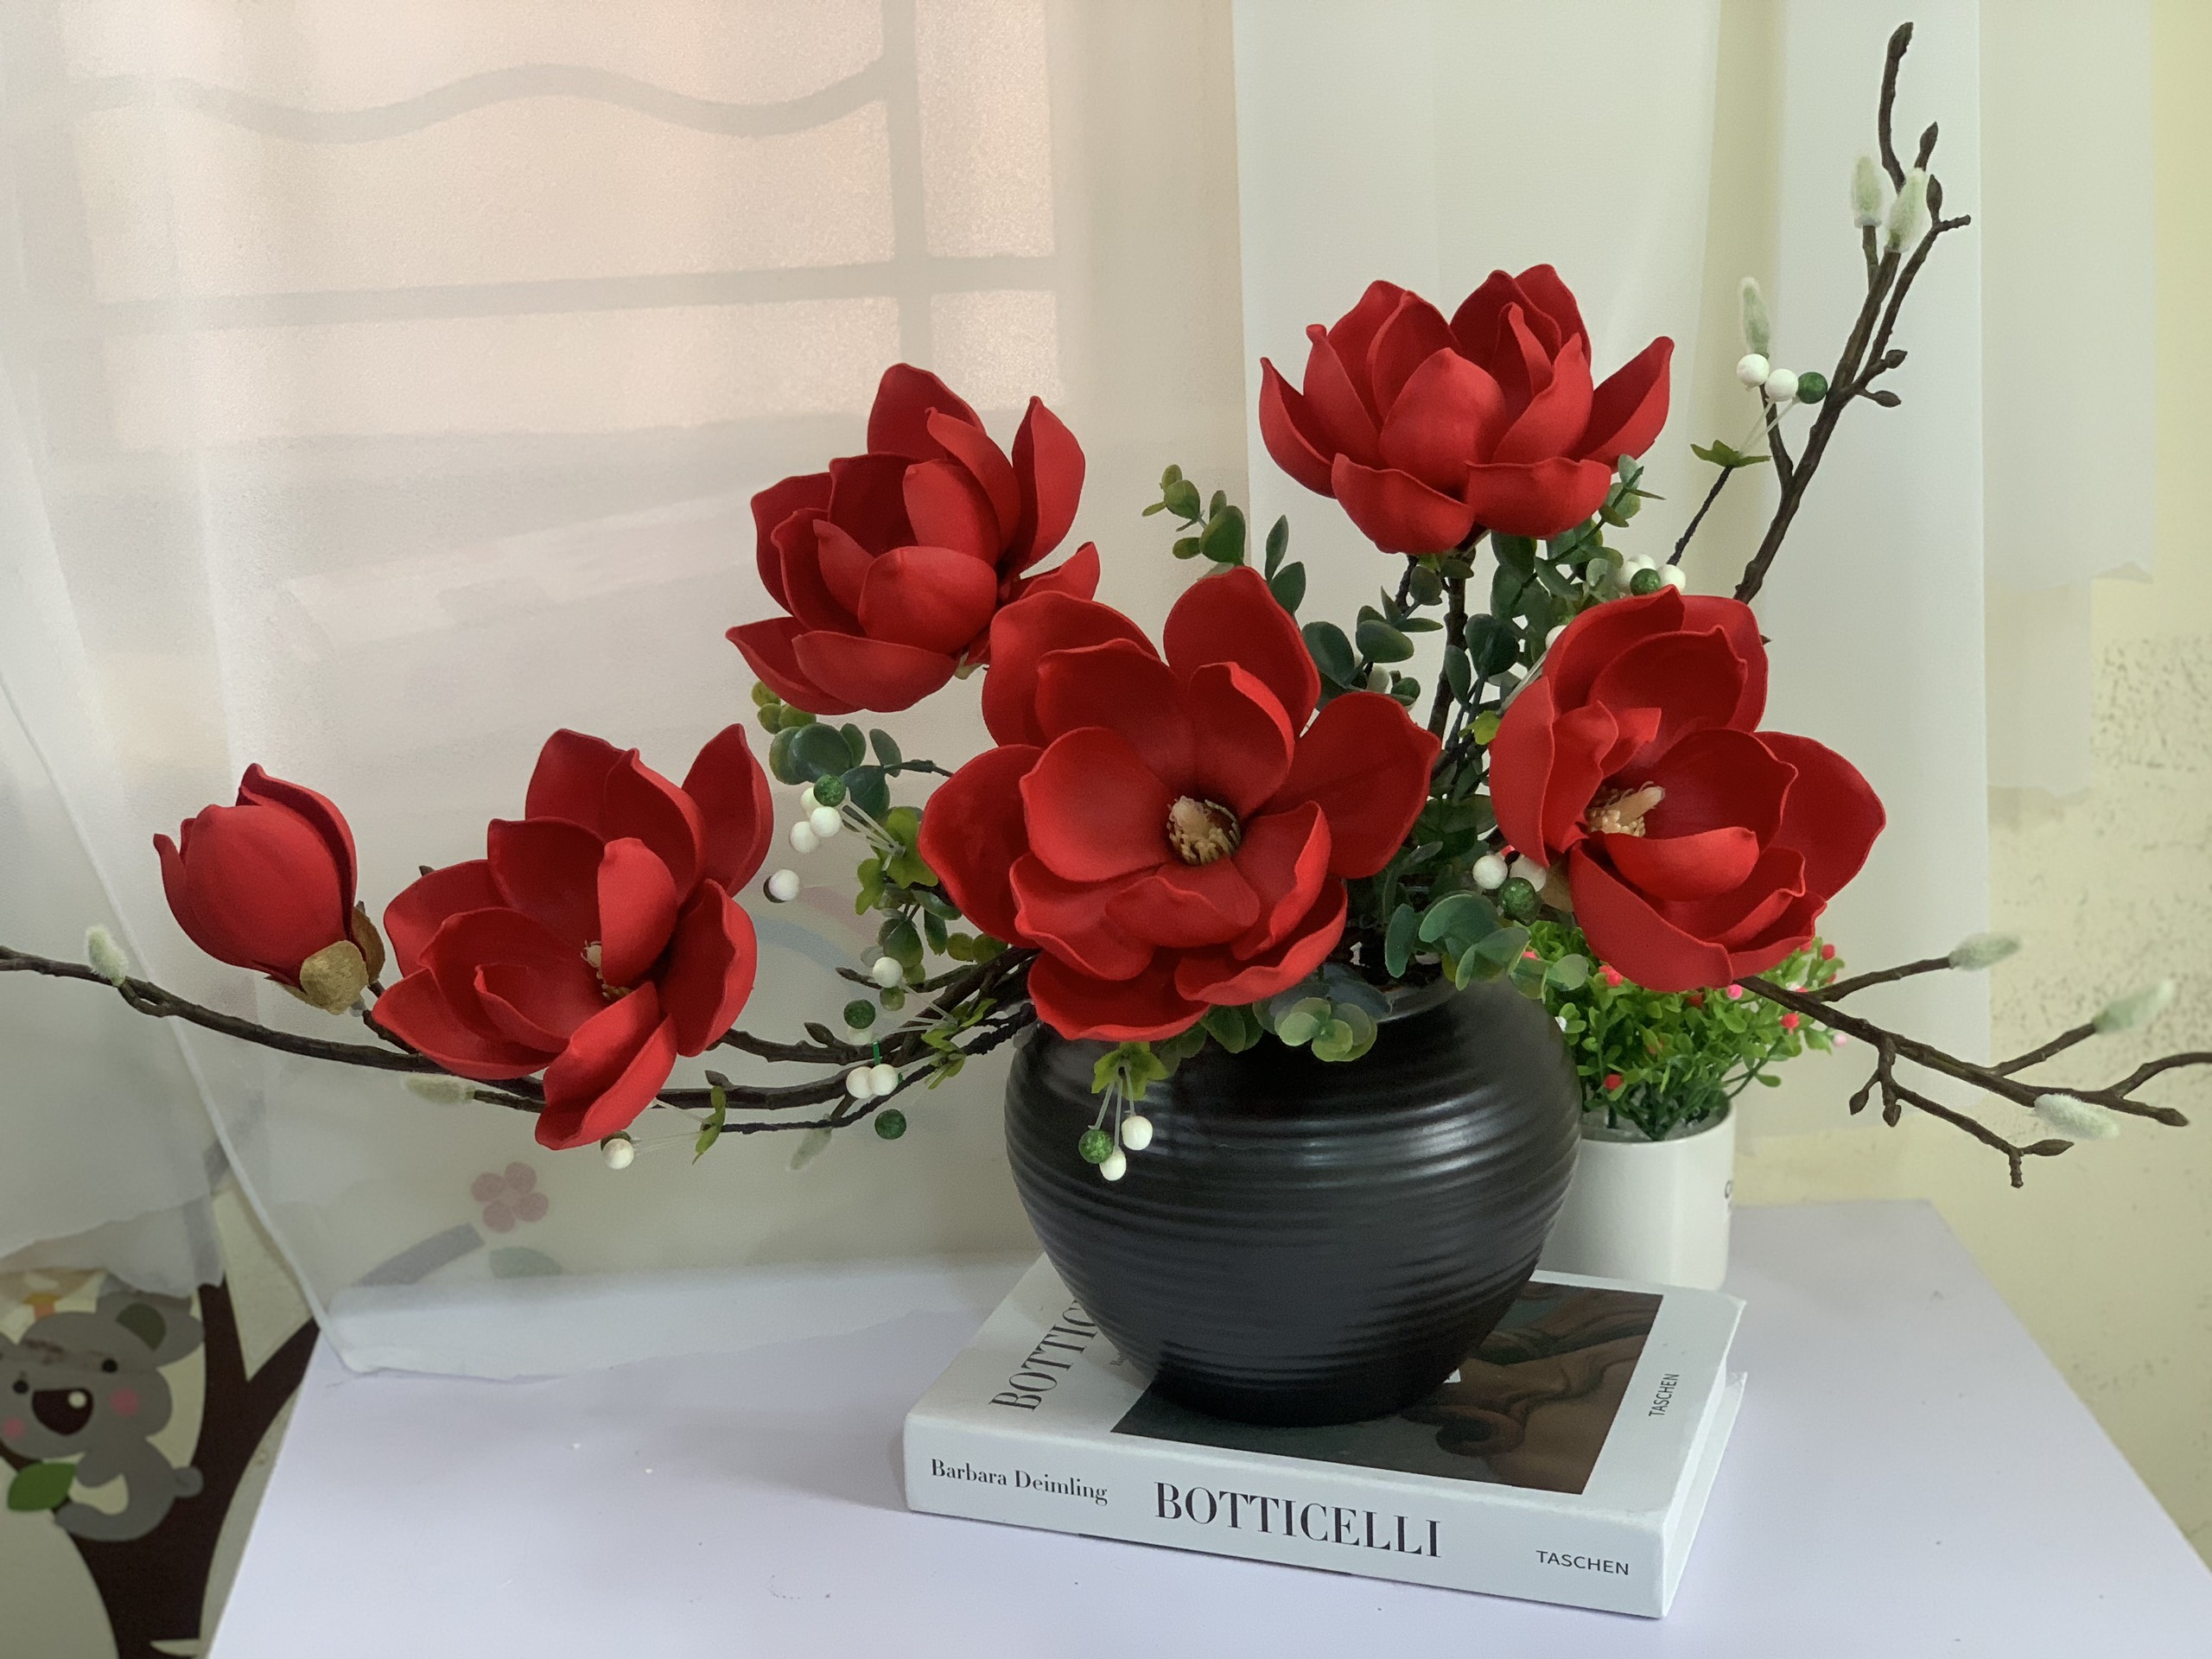 Bình hoa mộc lan 40cm hoa giả cao cấp để bàn, kệ tủ trang trí phòng khách, decor nhà hàng, spa đẹp sang trọng, làm quà tặng ý nghĩa